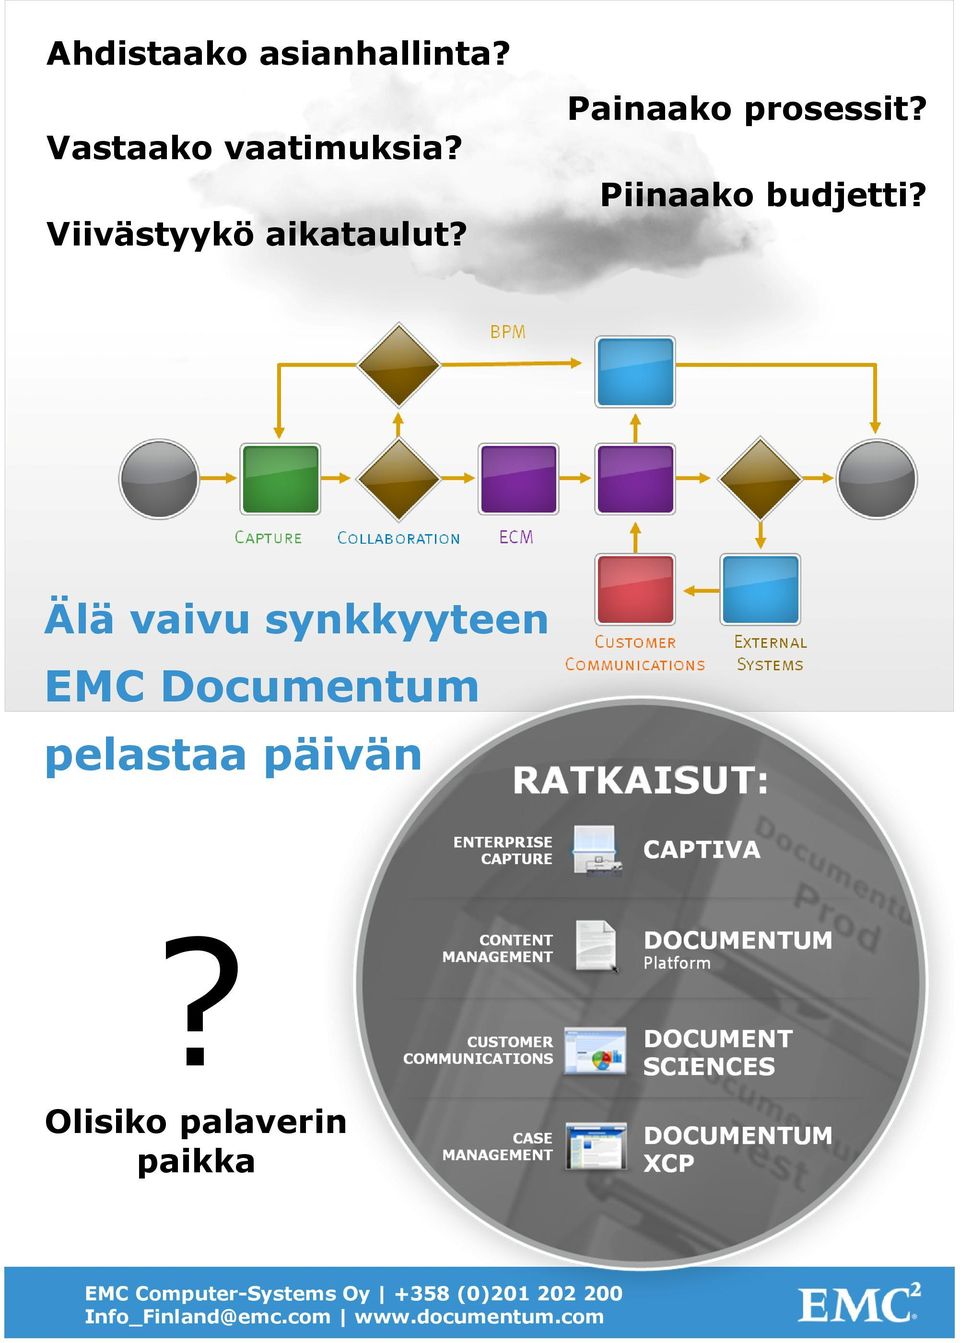 Älä vaivu synkkyyteen EMC Documentum pelastaa päivän?